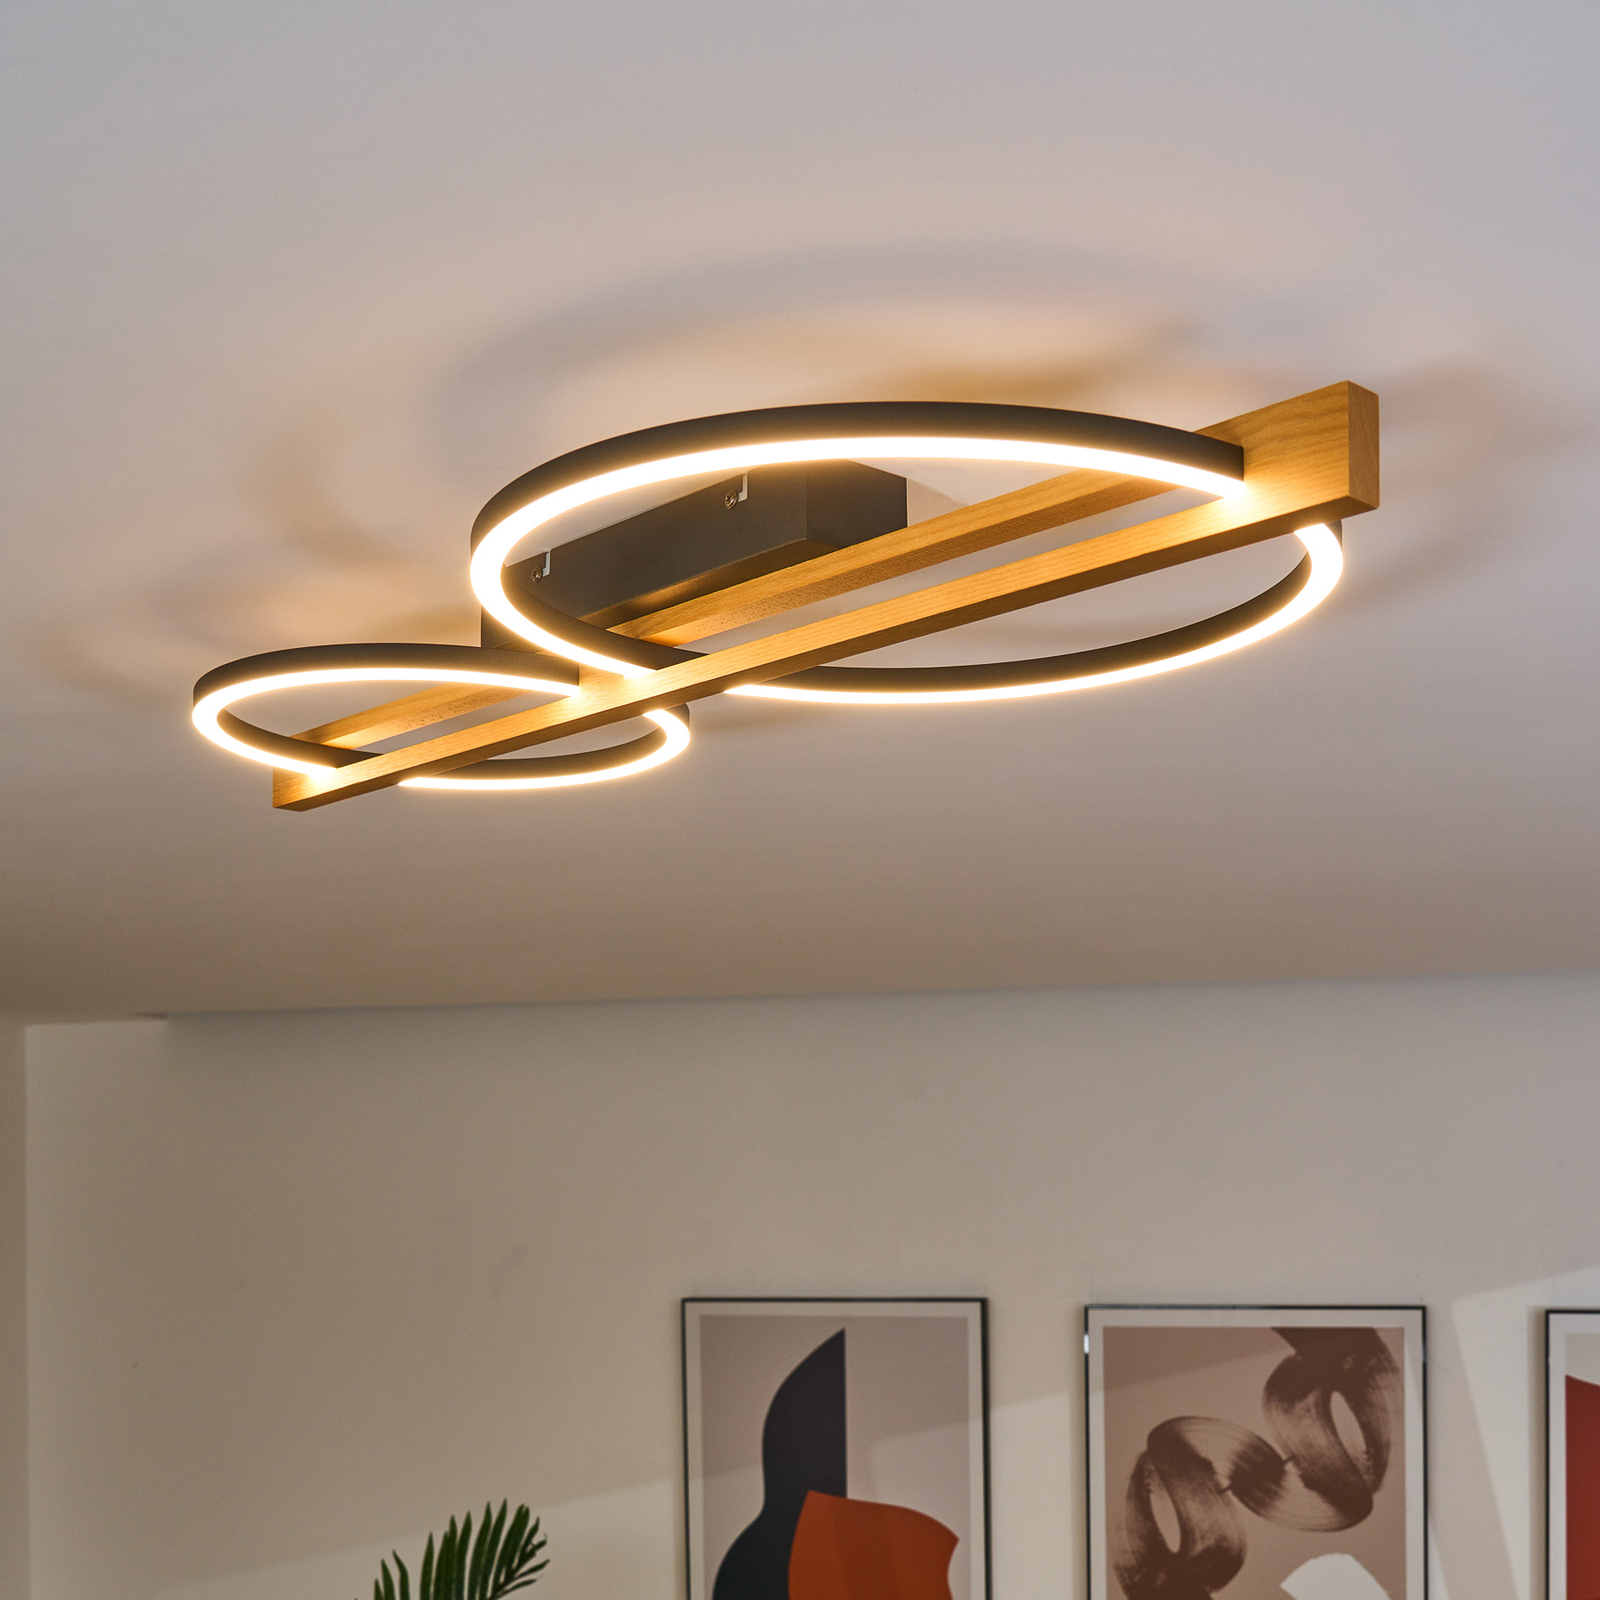 LED ceiling light Tovak, pine, length 75.8 cm, 2-bulb wood